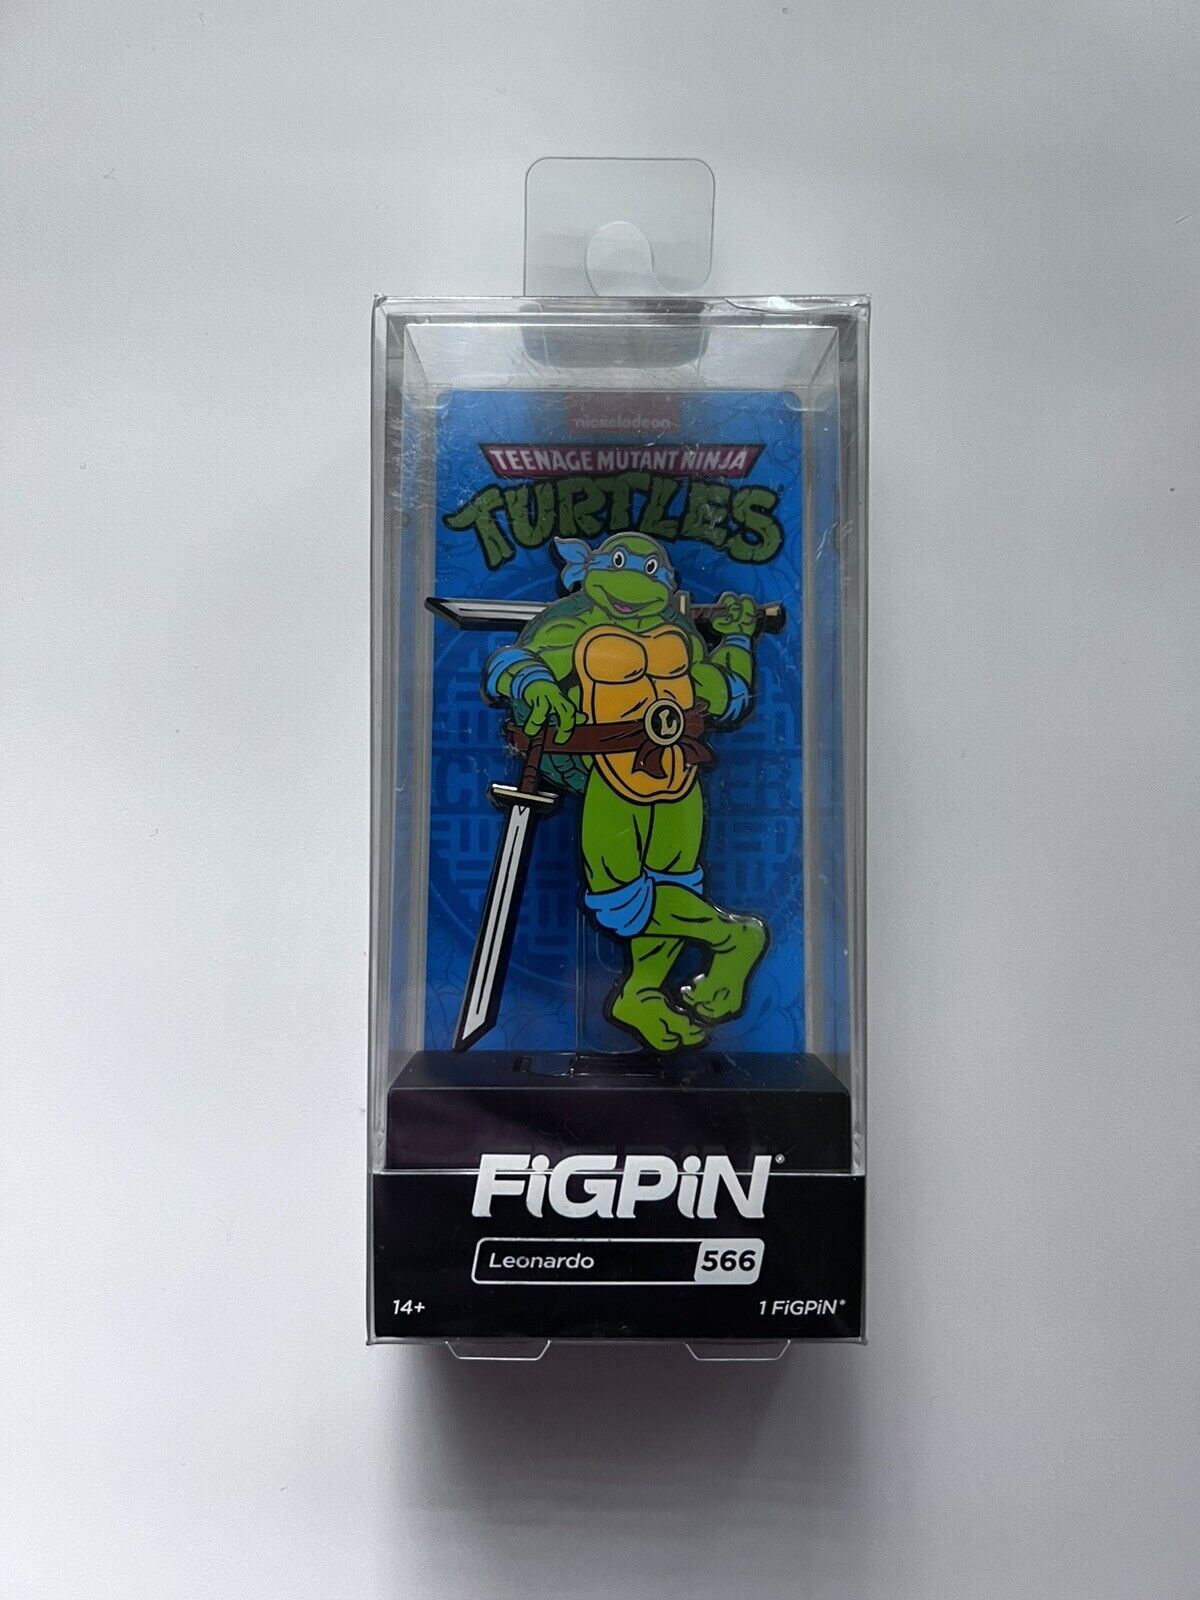 FiGPiN Classic: Teenage Mutant Ninja Turtles - Leonardo #566